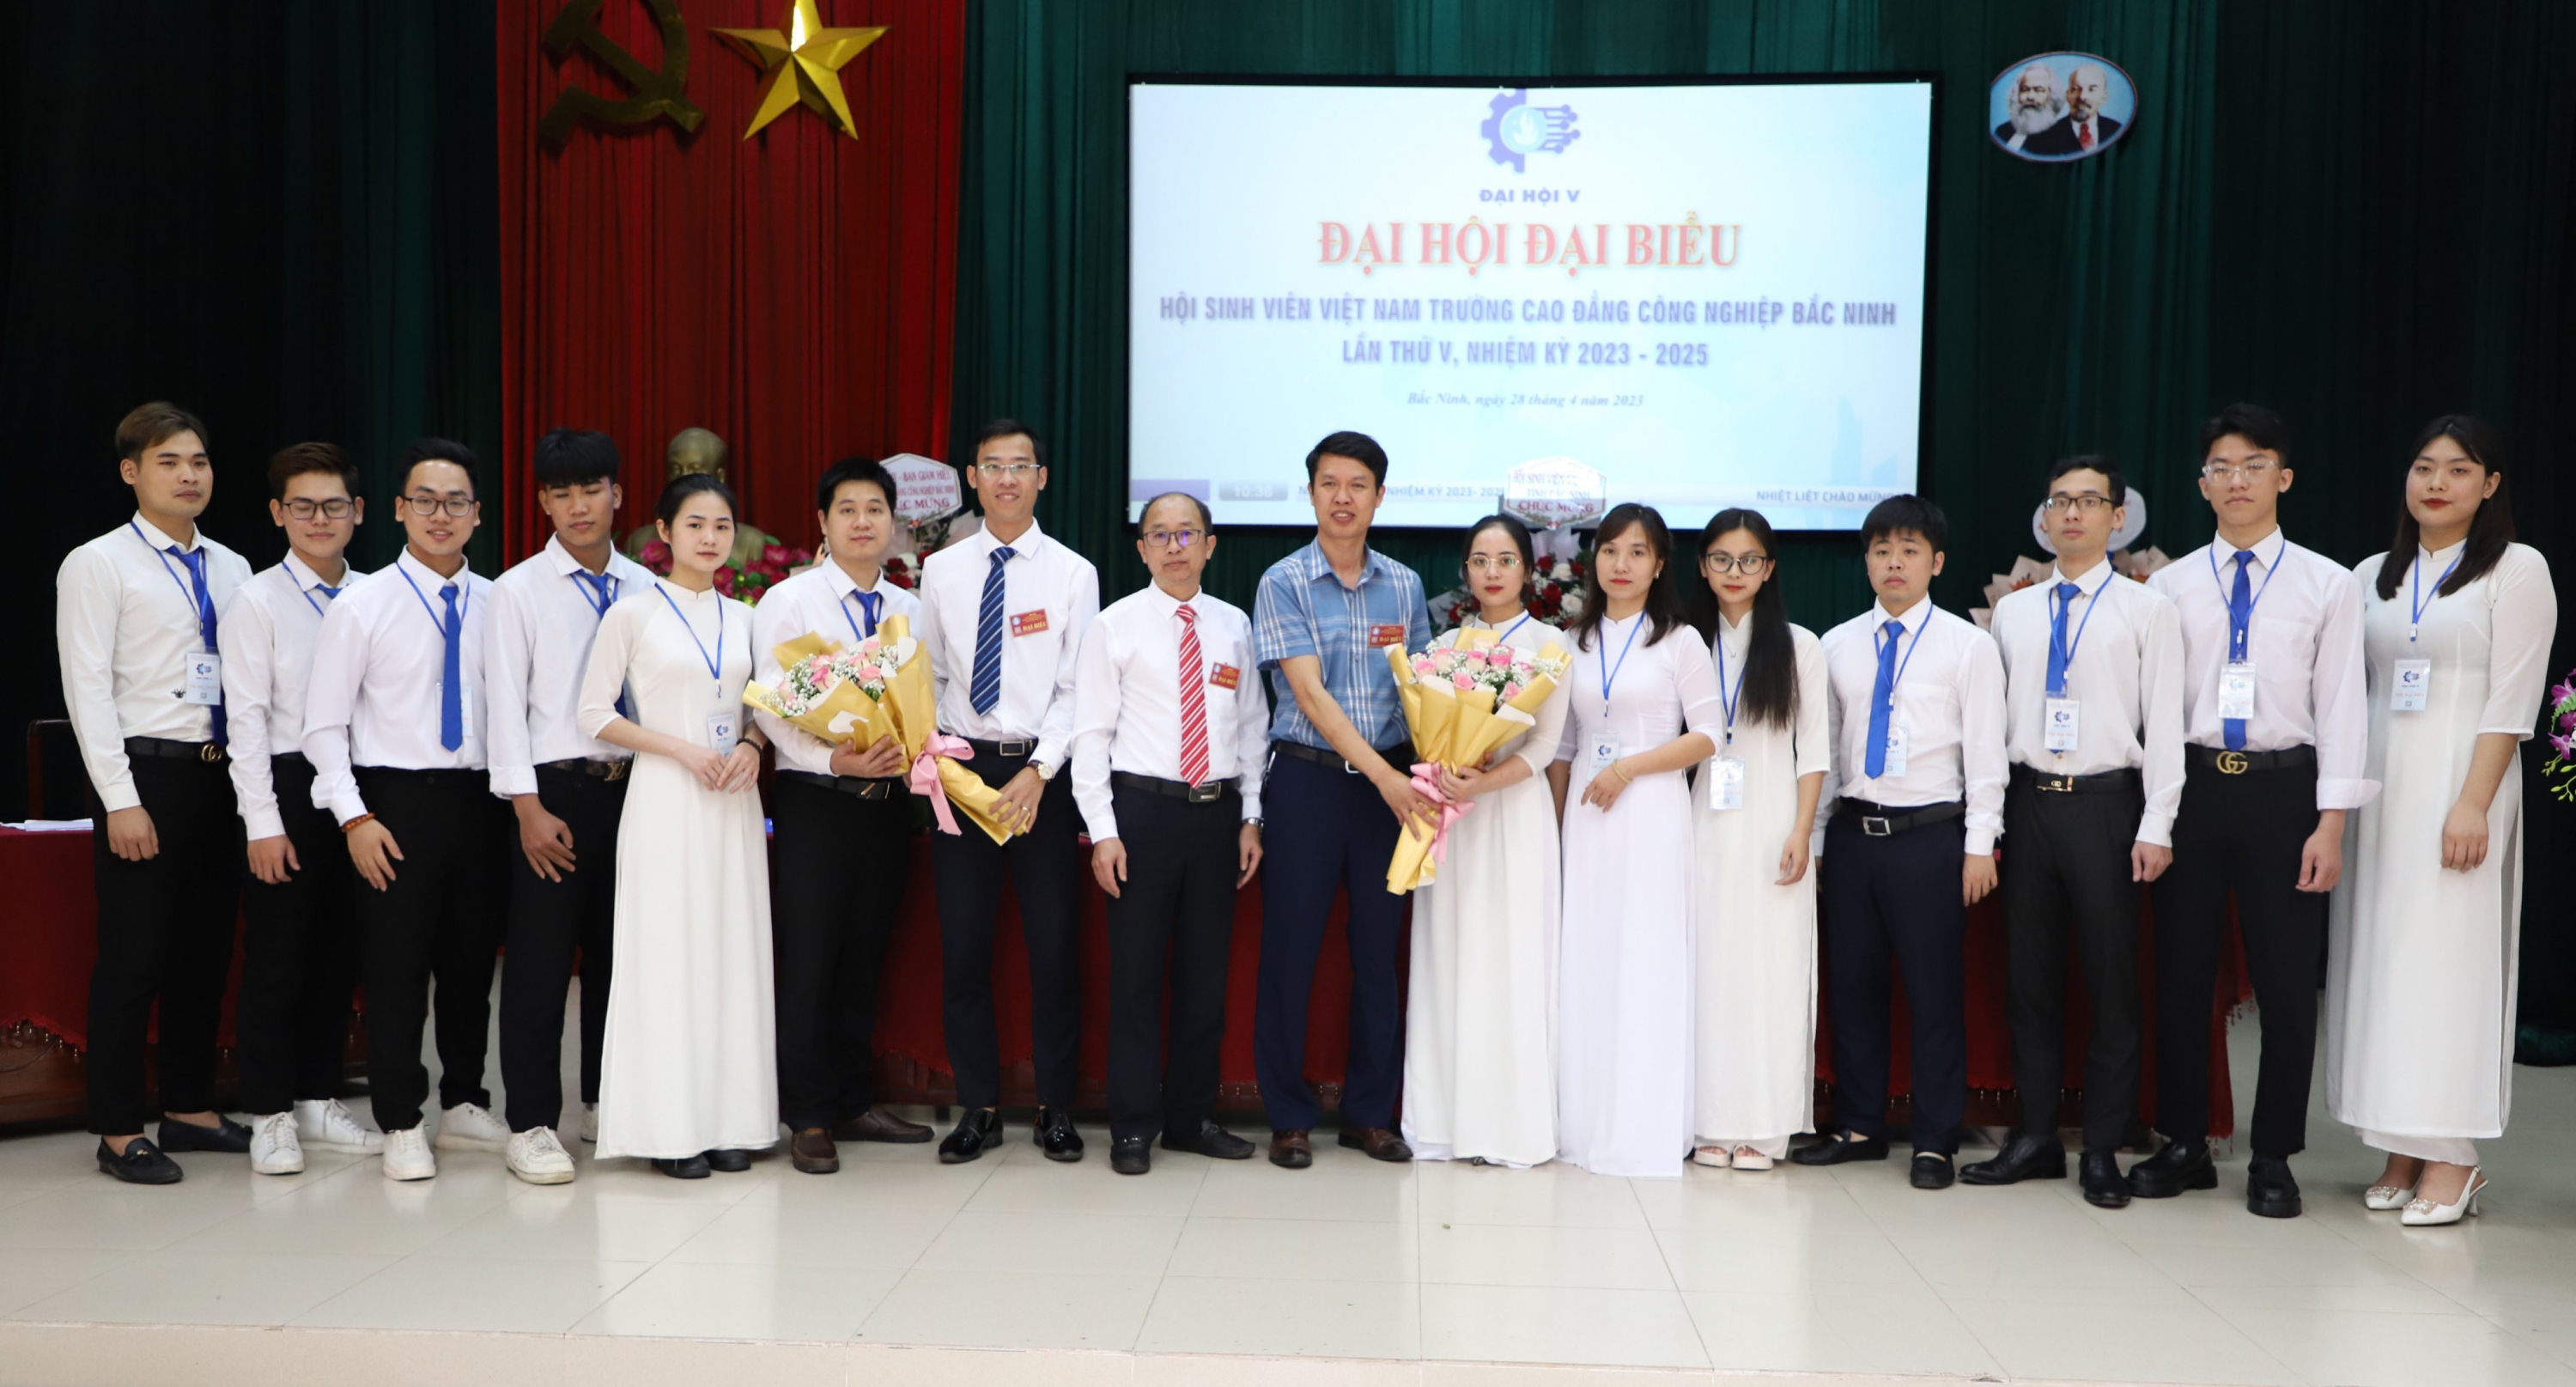 Đại hội đại biểu Hội sinh viên Trường Cao đẳng Công nghiệp Bắc Ninh lần thứ V, nhiệm kỳ 2023 – 2025